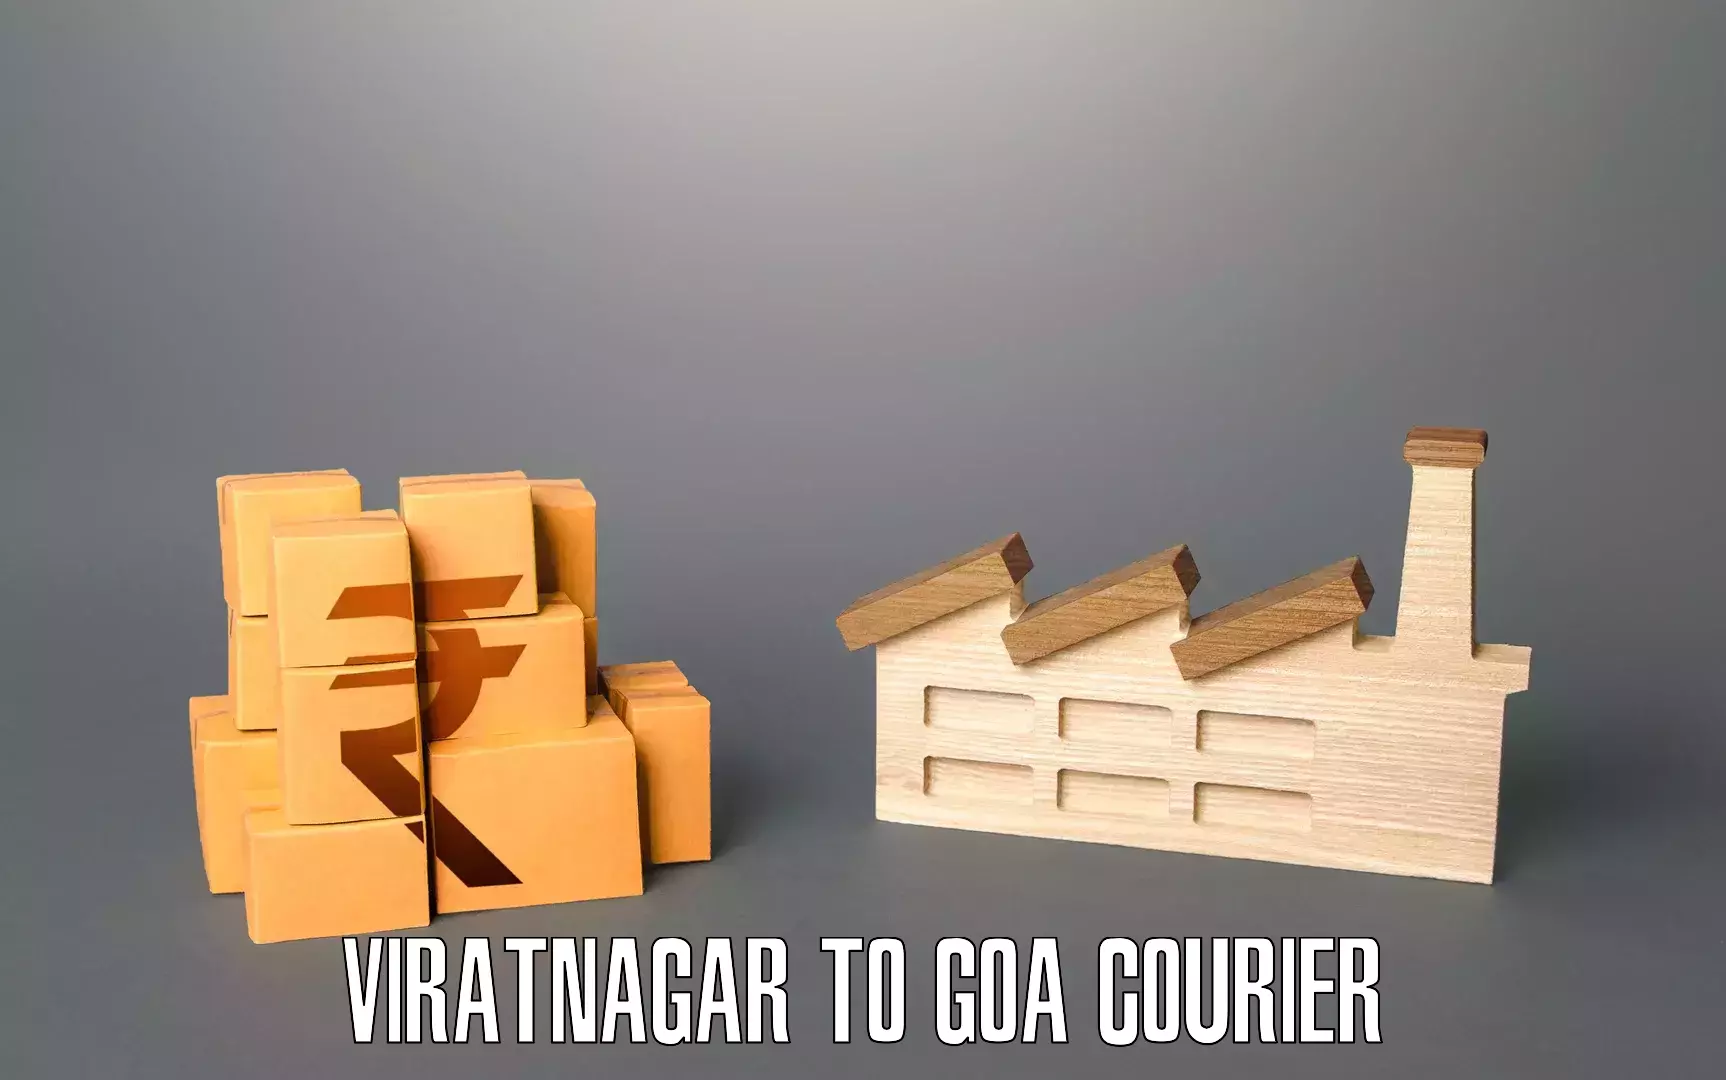 Moving service excellence Viratnagar to NIT Goa